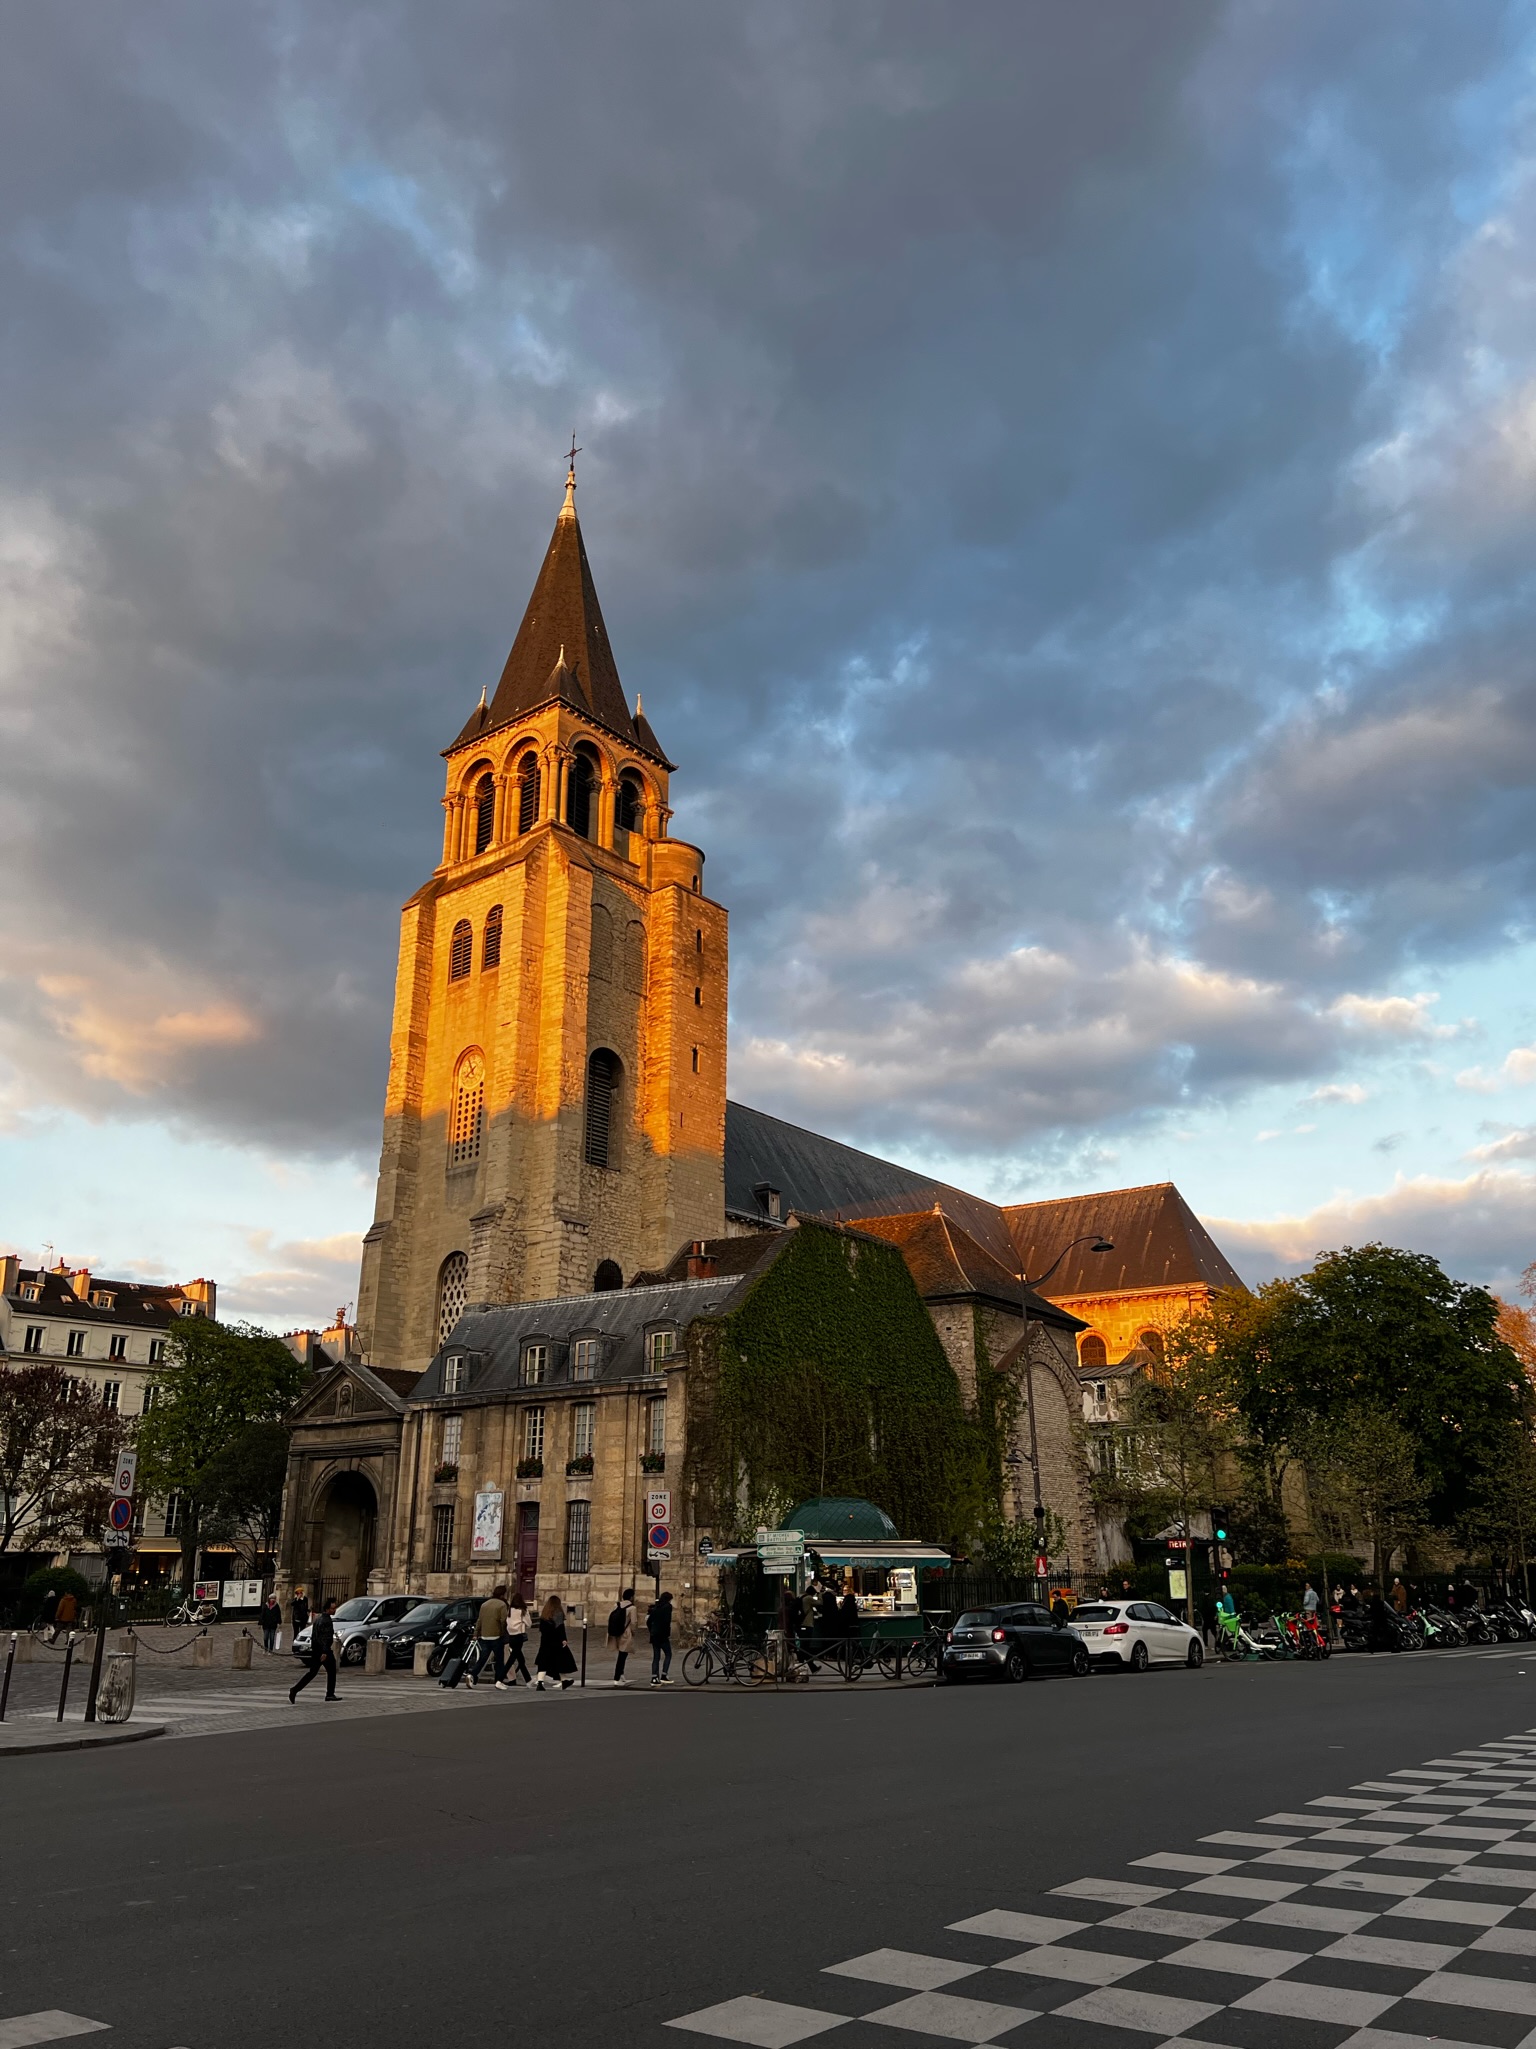 The Essential Travel Guide to Saint-Germain-des-Prés in Paris